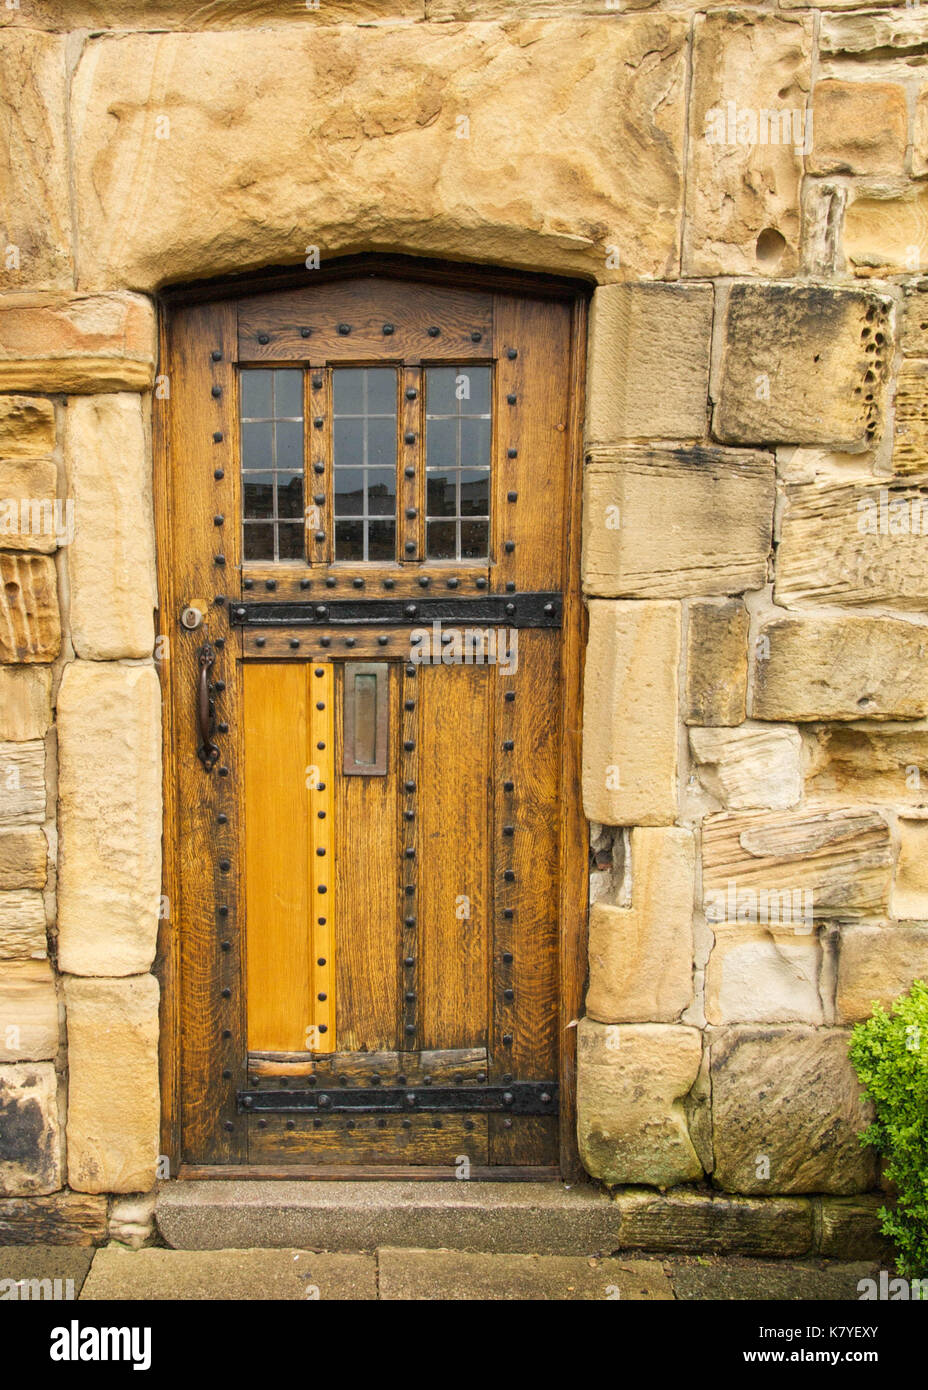 Mittelalterliche Kathedrale Tür der Honigfarbene Eiche mit massiven steinernen Türsturz, dekorative Bügeleisen Bolzen und Hardware Stockfoto